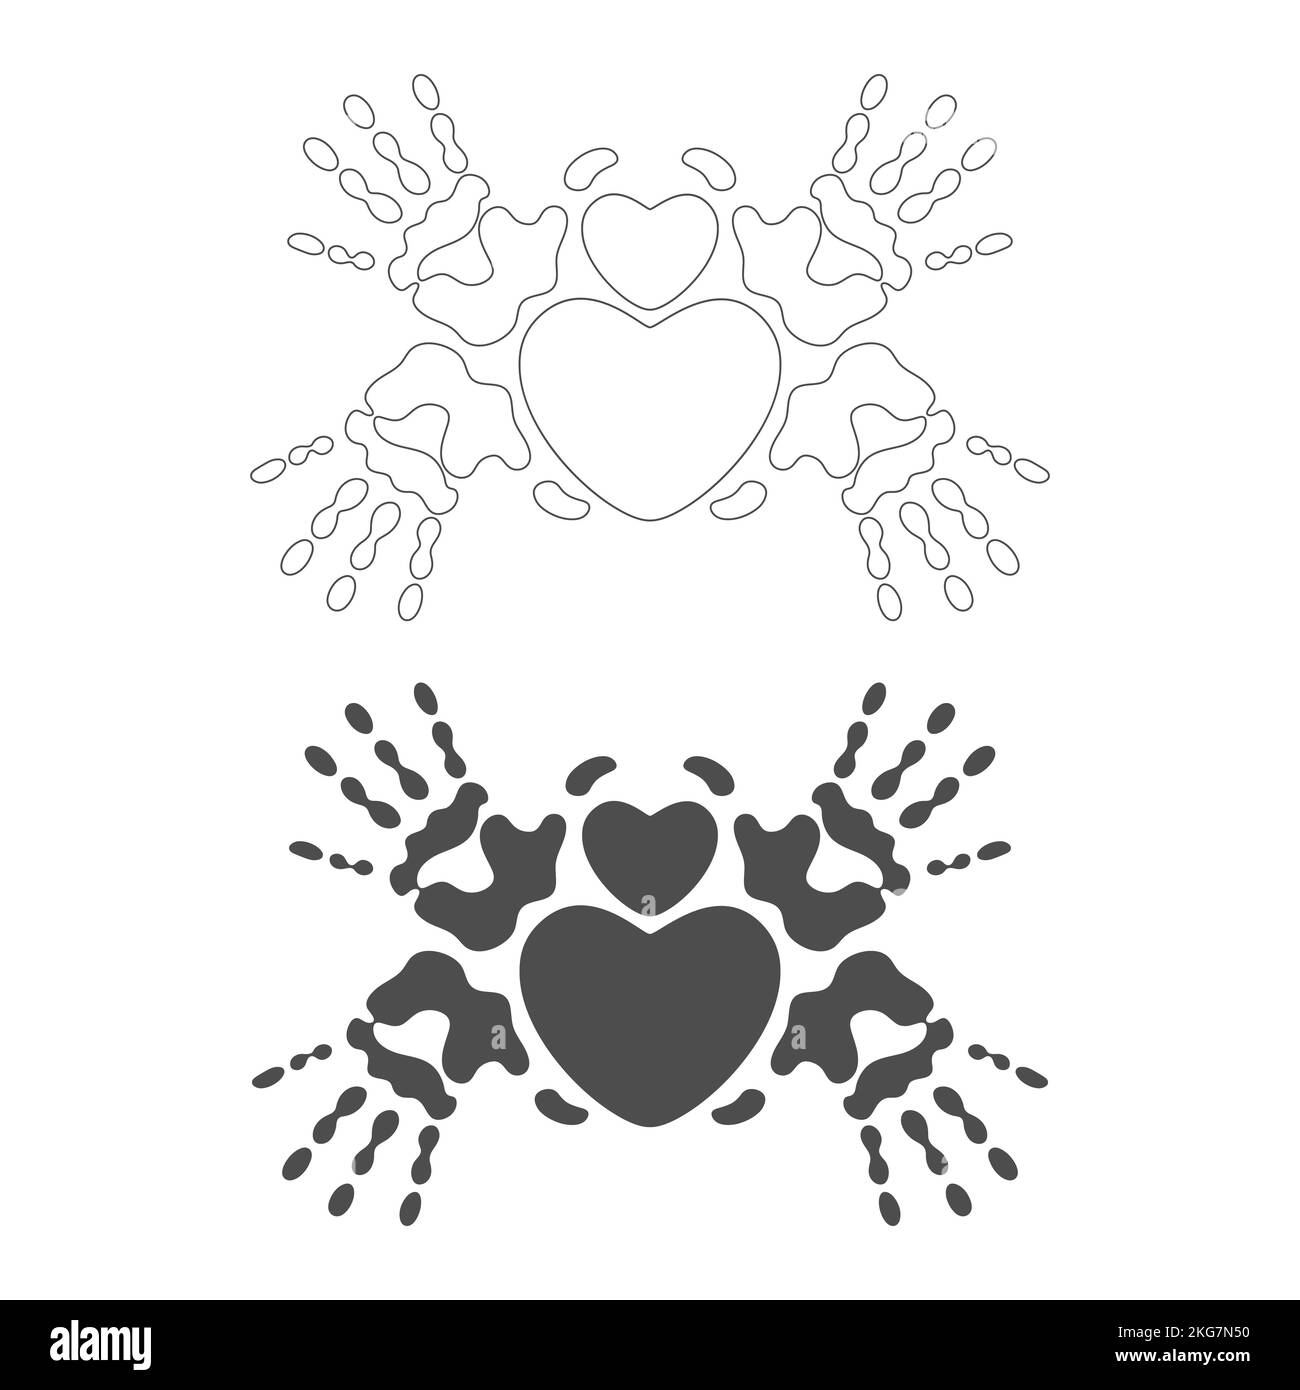 Simbolo del cuore tra le stampe delle palme, la stampa a mano, il cuore nelle mani. Oggetti vettoriali isolati su sfondo bianco. Illustrazione Vettoriale